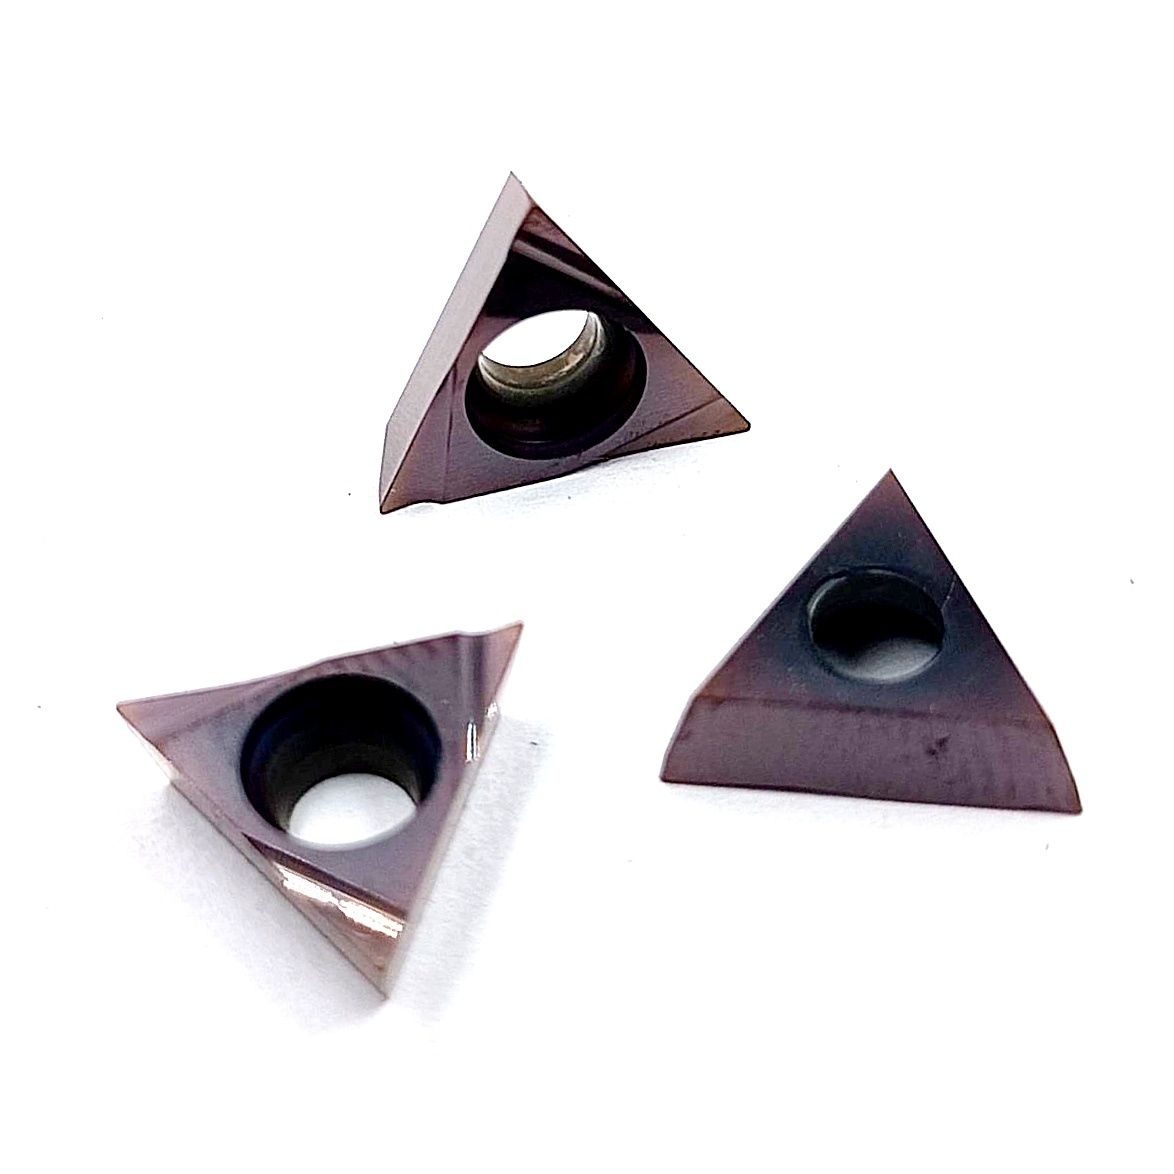 Пластины правильный треугольник с зад.углом TPGH 110302 L-F материал обработки - сталь